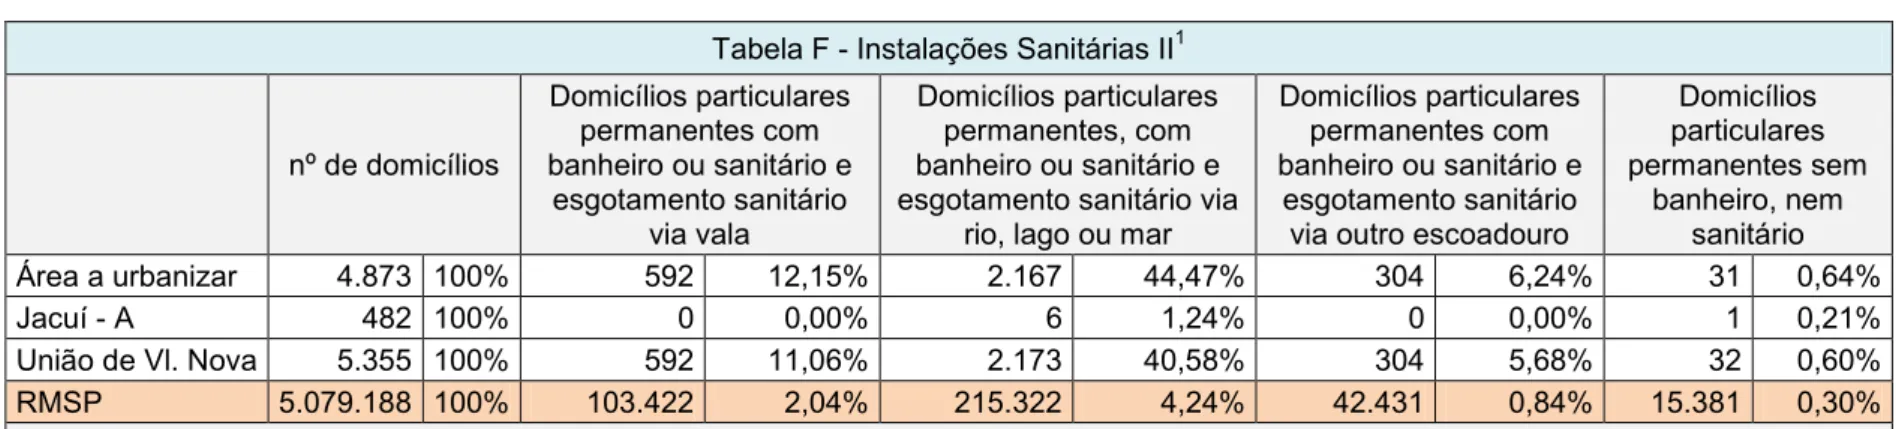 Tabela F - Instalações Sanitárias II 1 